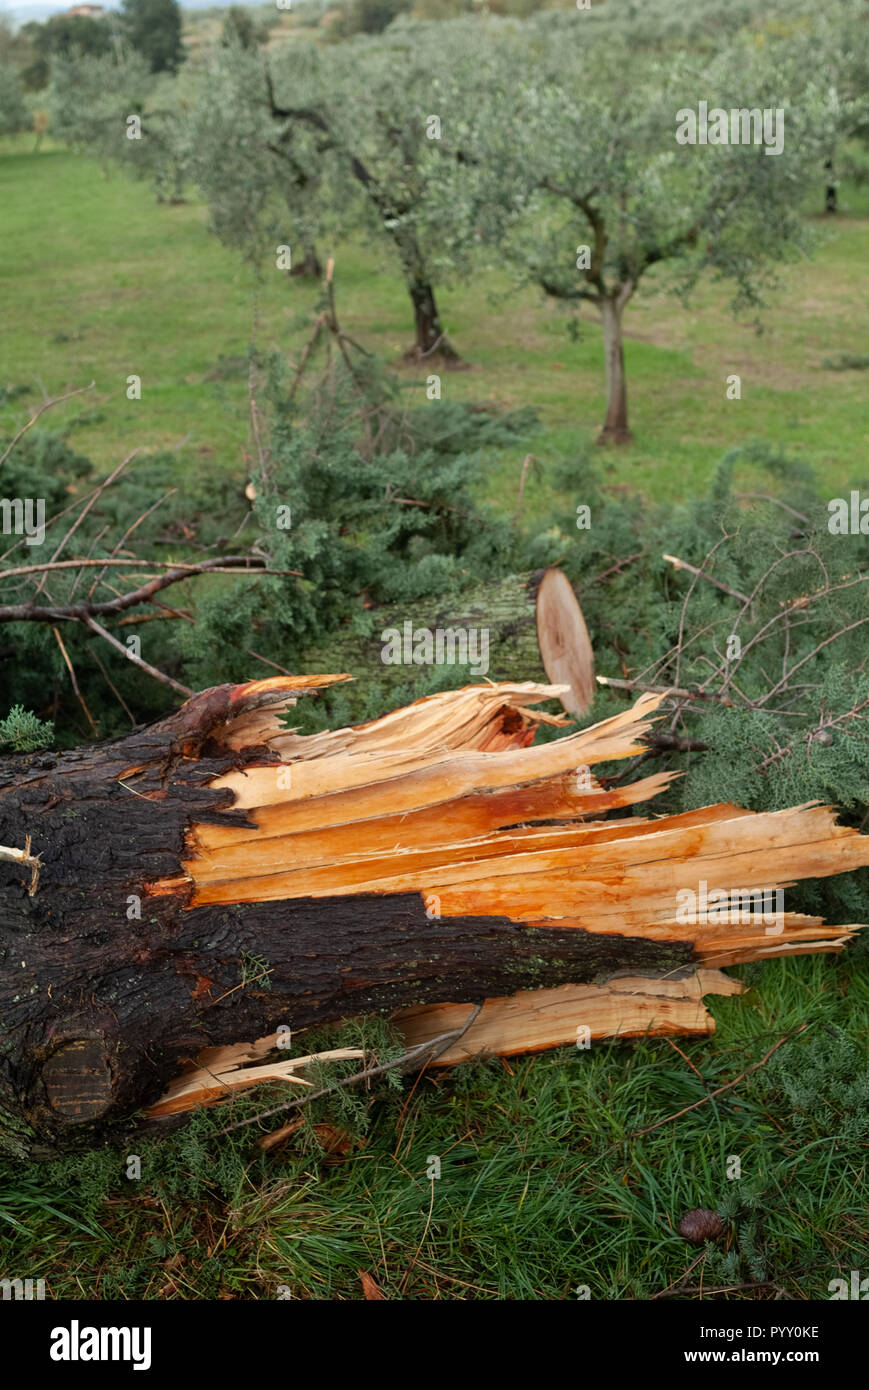 Reggello, Provinz Florenz. Hohe Valdarno. Italien - Oktober 30th, 2018-Straße Grenze Bäume von heute wind Sturm beschädigt, die stärkste seit Jahrzehnten. Stockfoto